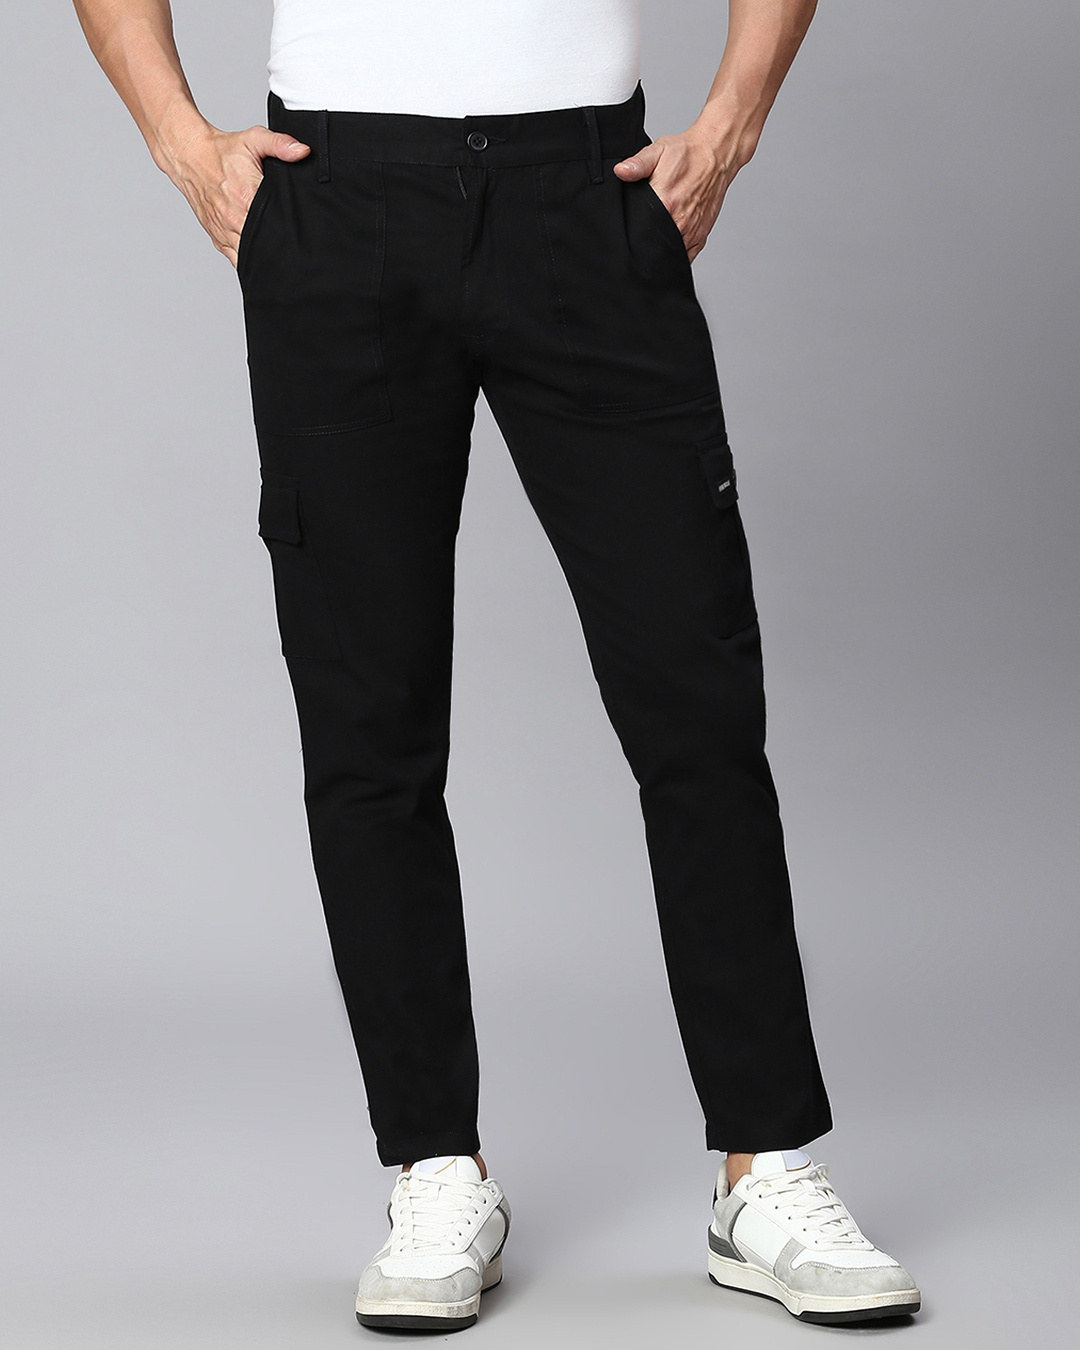 Buy Men's Black Cargo Trousers Online at Bewakoof